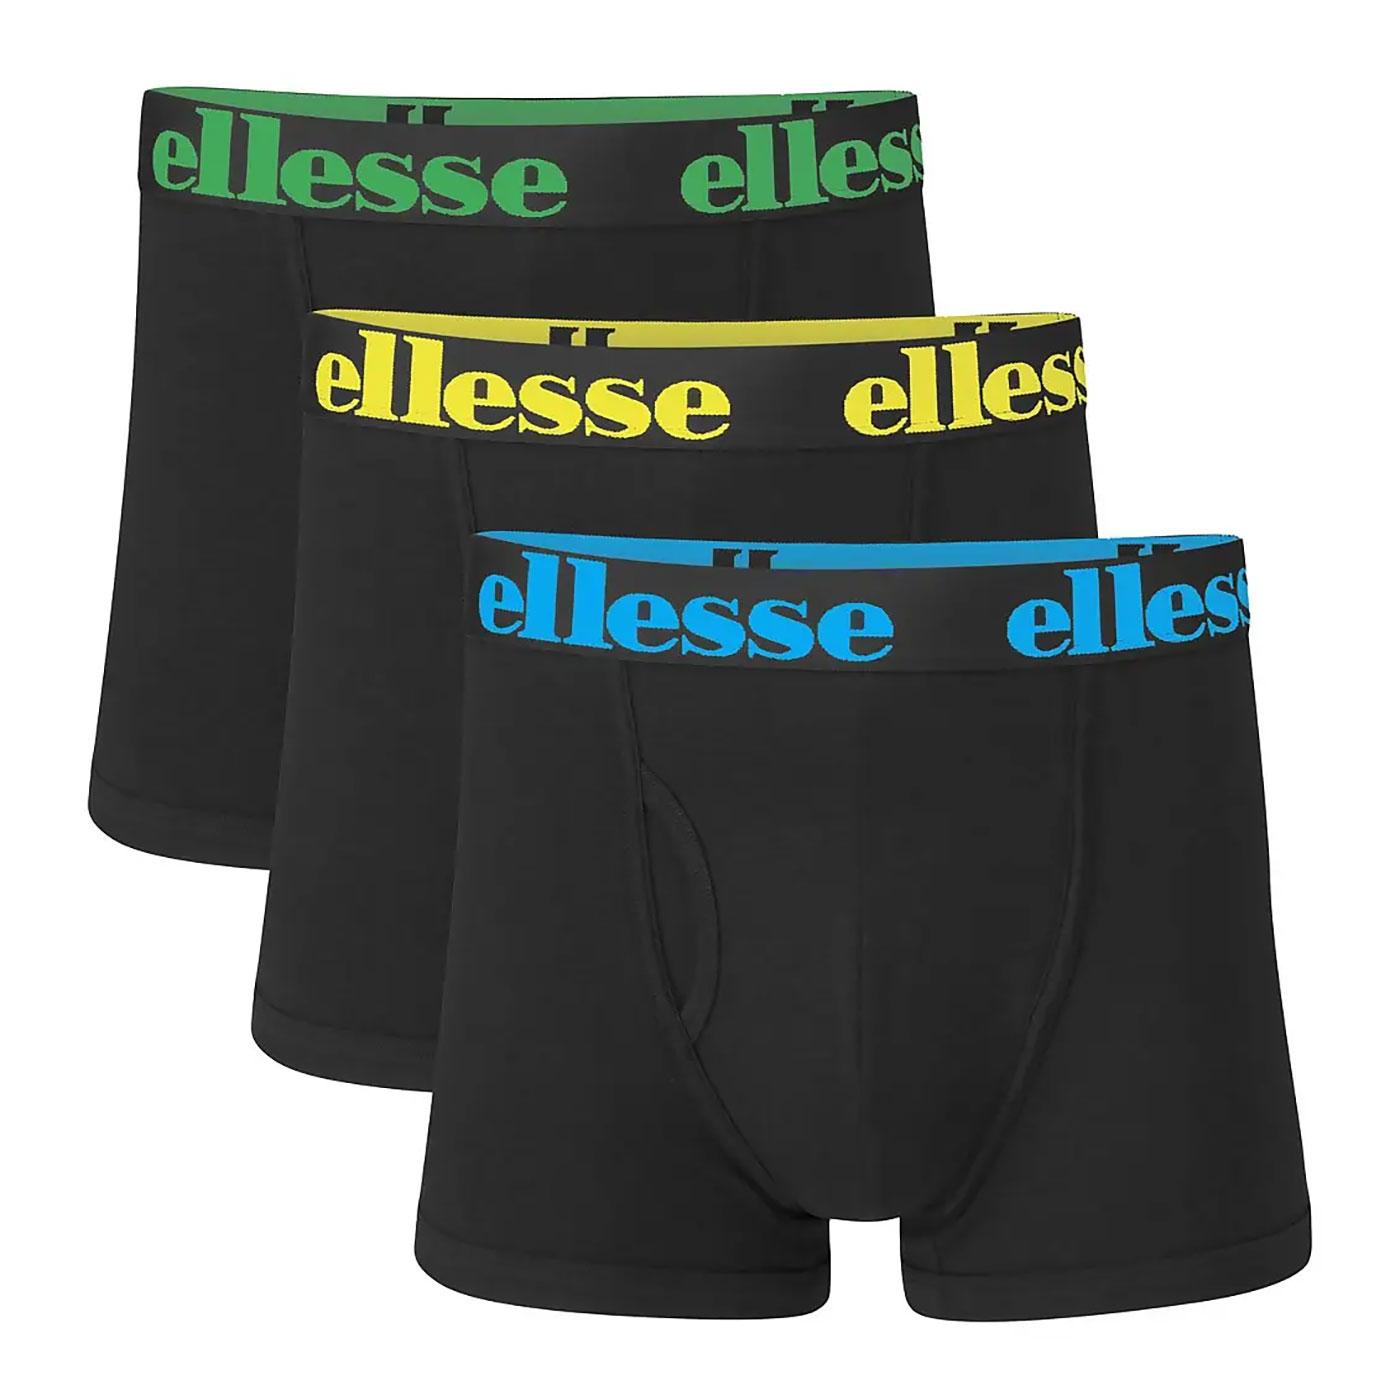 Hali ELLESSE Mens 3-Pack Noen Band Boxer Shorts